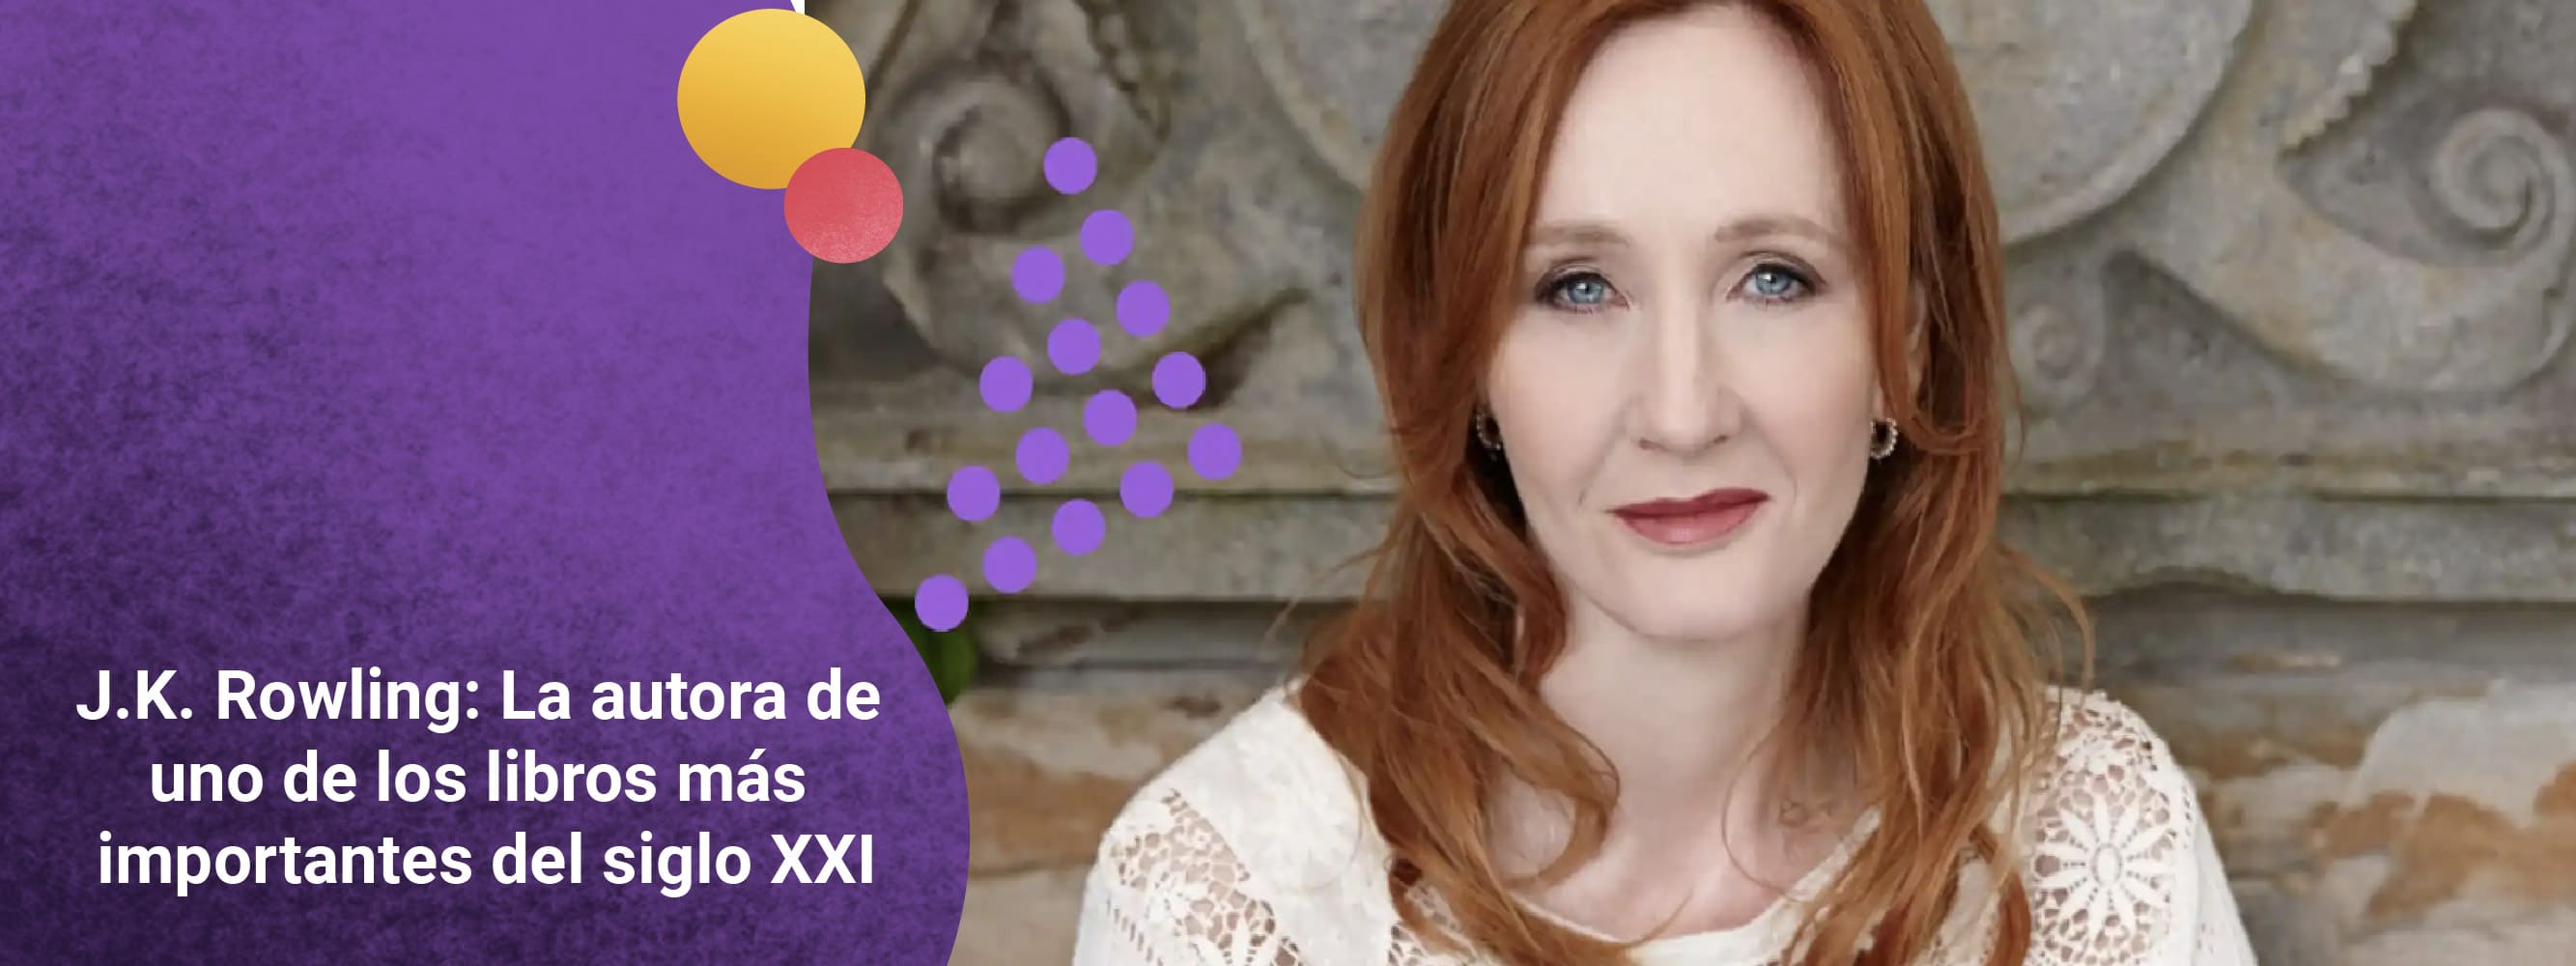 J.K. Rowling: Celebremos a la autora de uno de los libros más importantes del siglo XXI